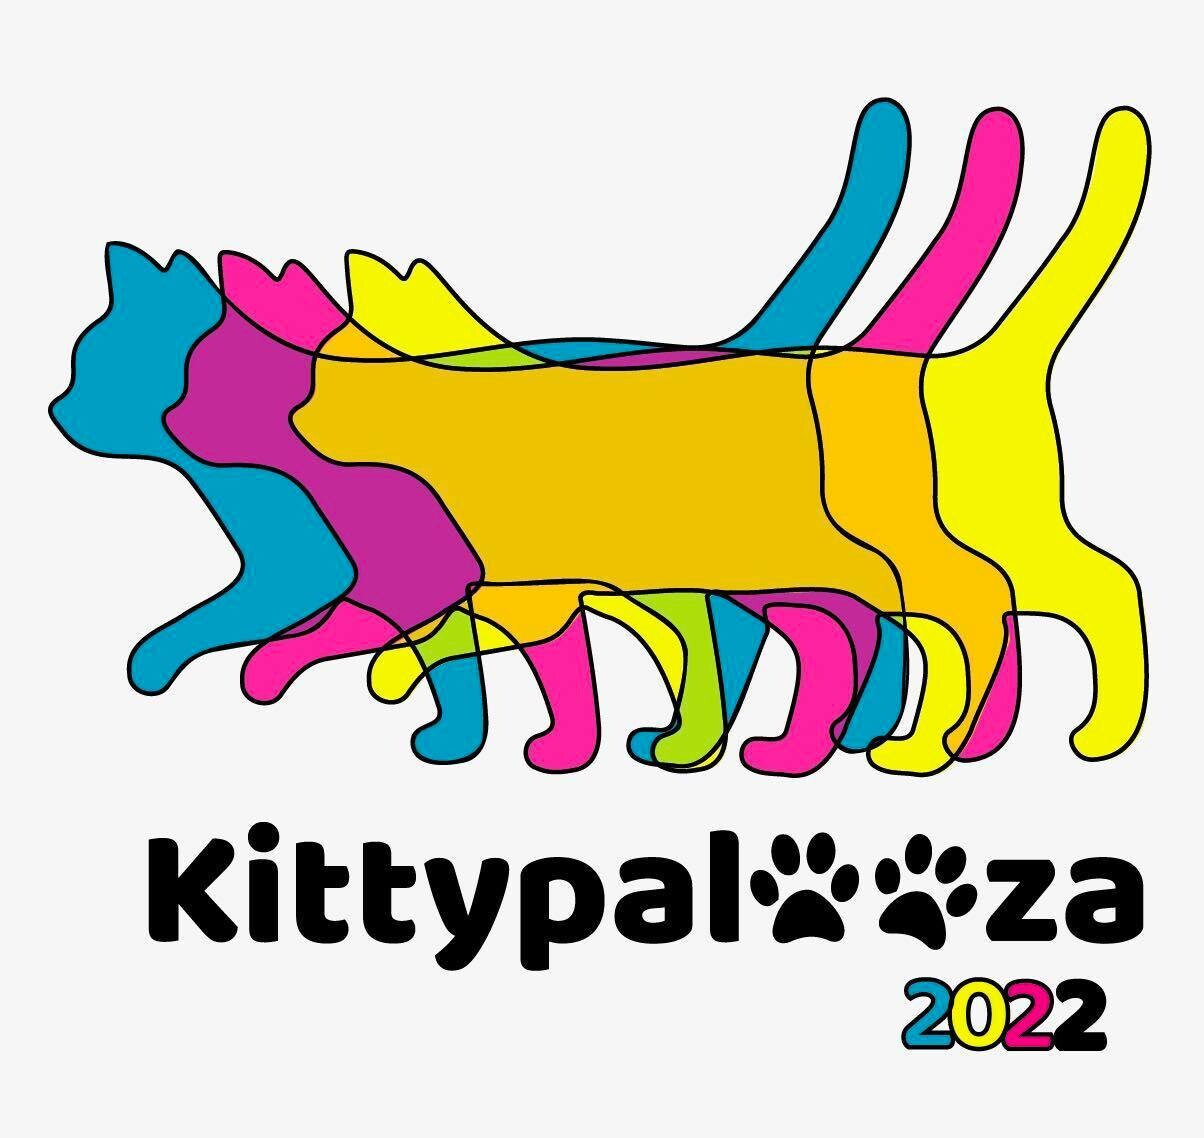 Pre-Order Kittypalooza 2022